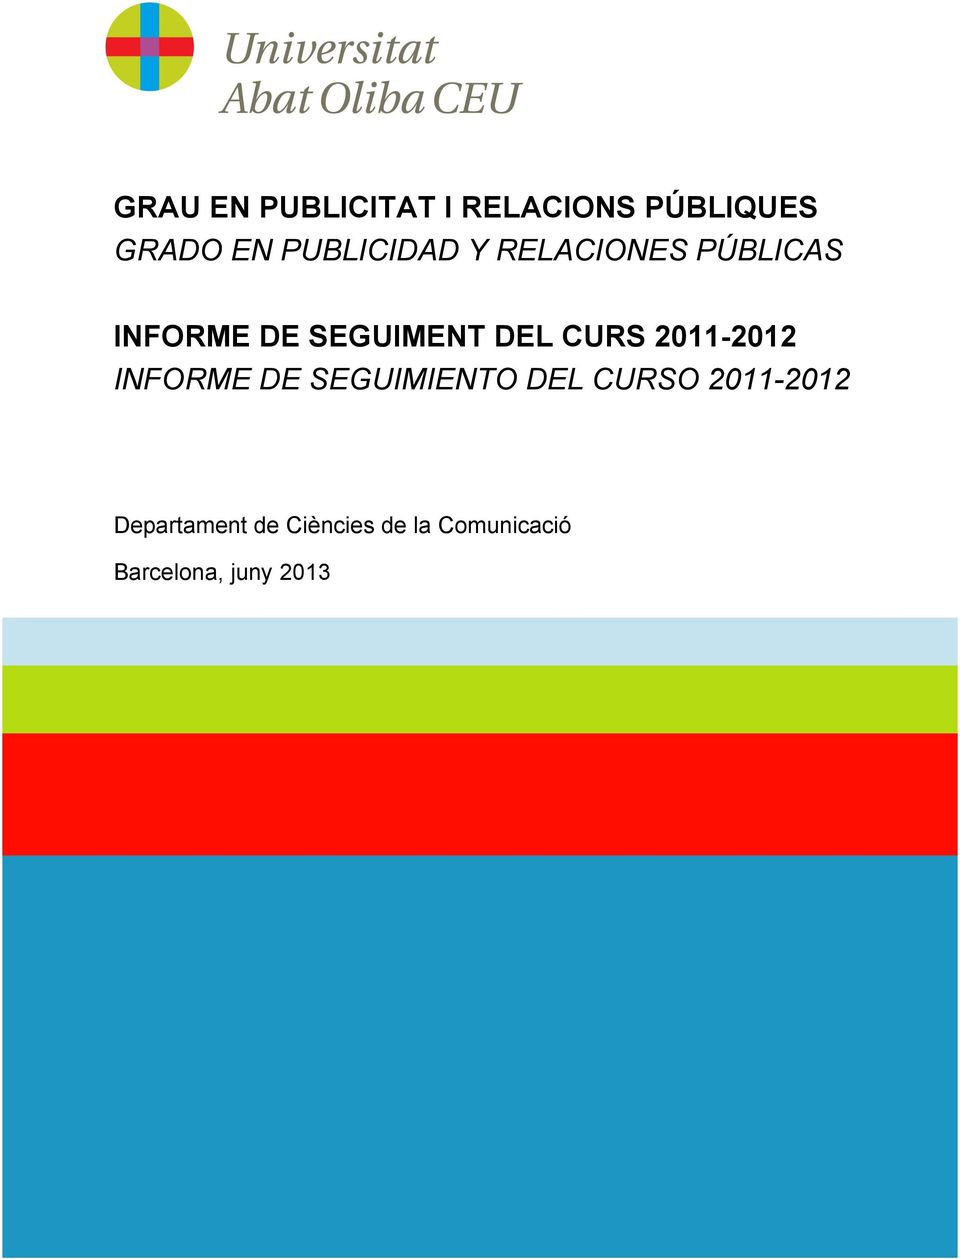 DEL CURS 2011-2012 INFORME DE SEGUIMIENTO DEL CURSO